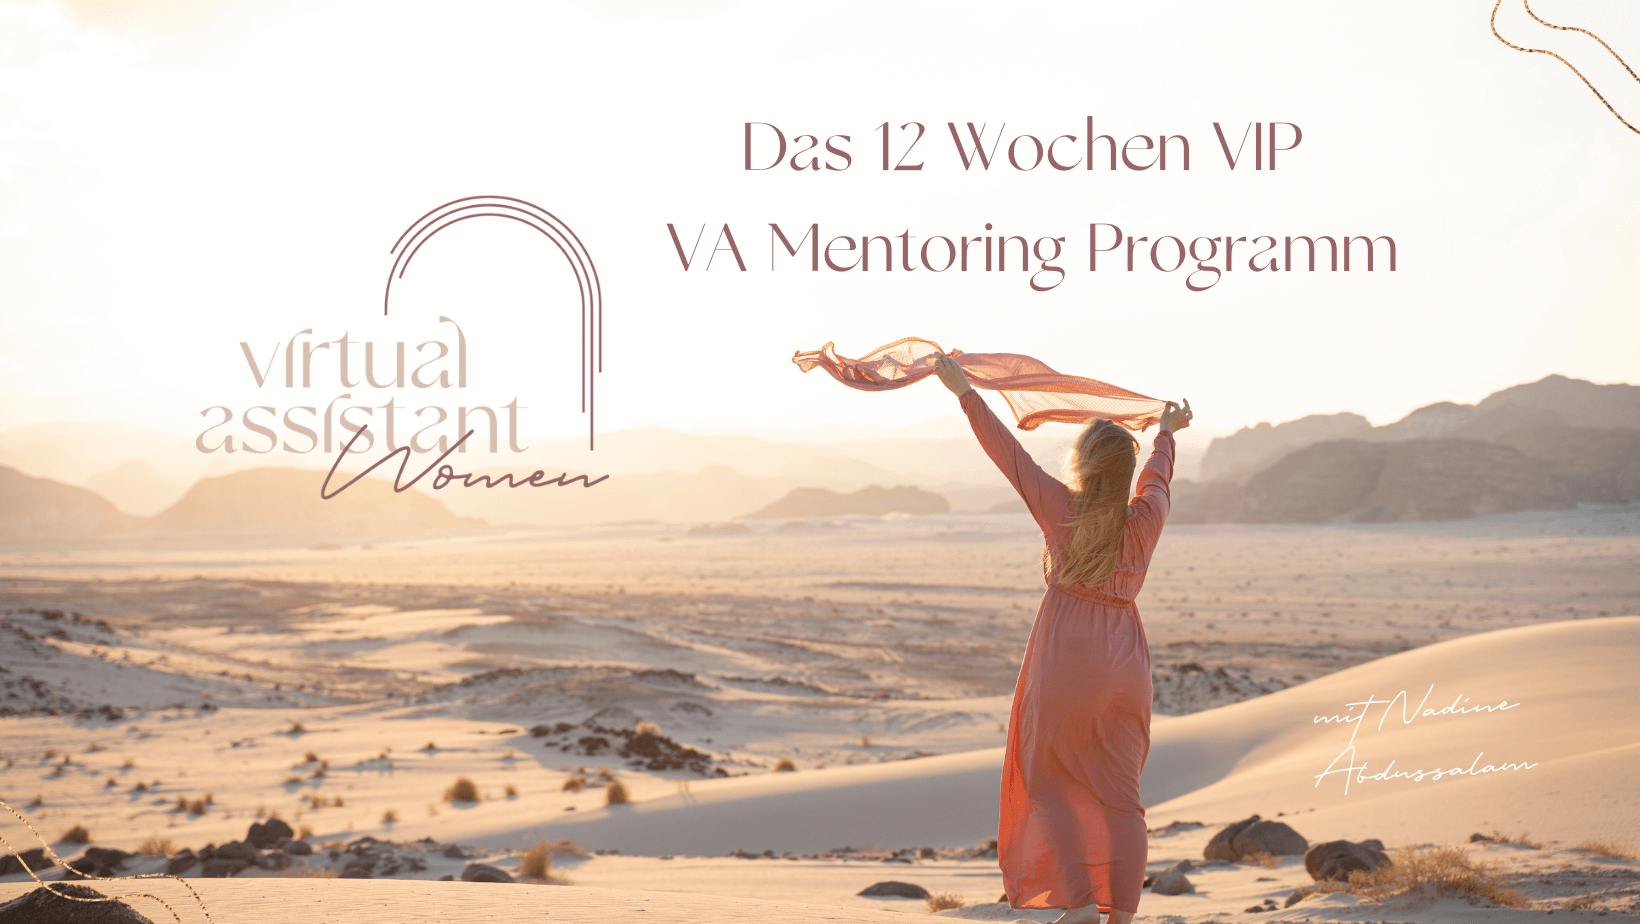 VA Mentoring Programm